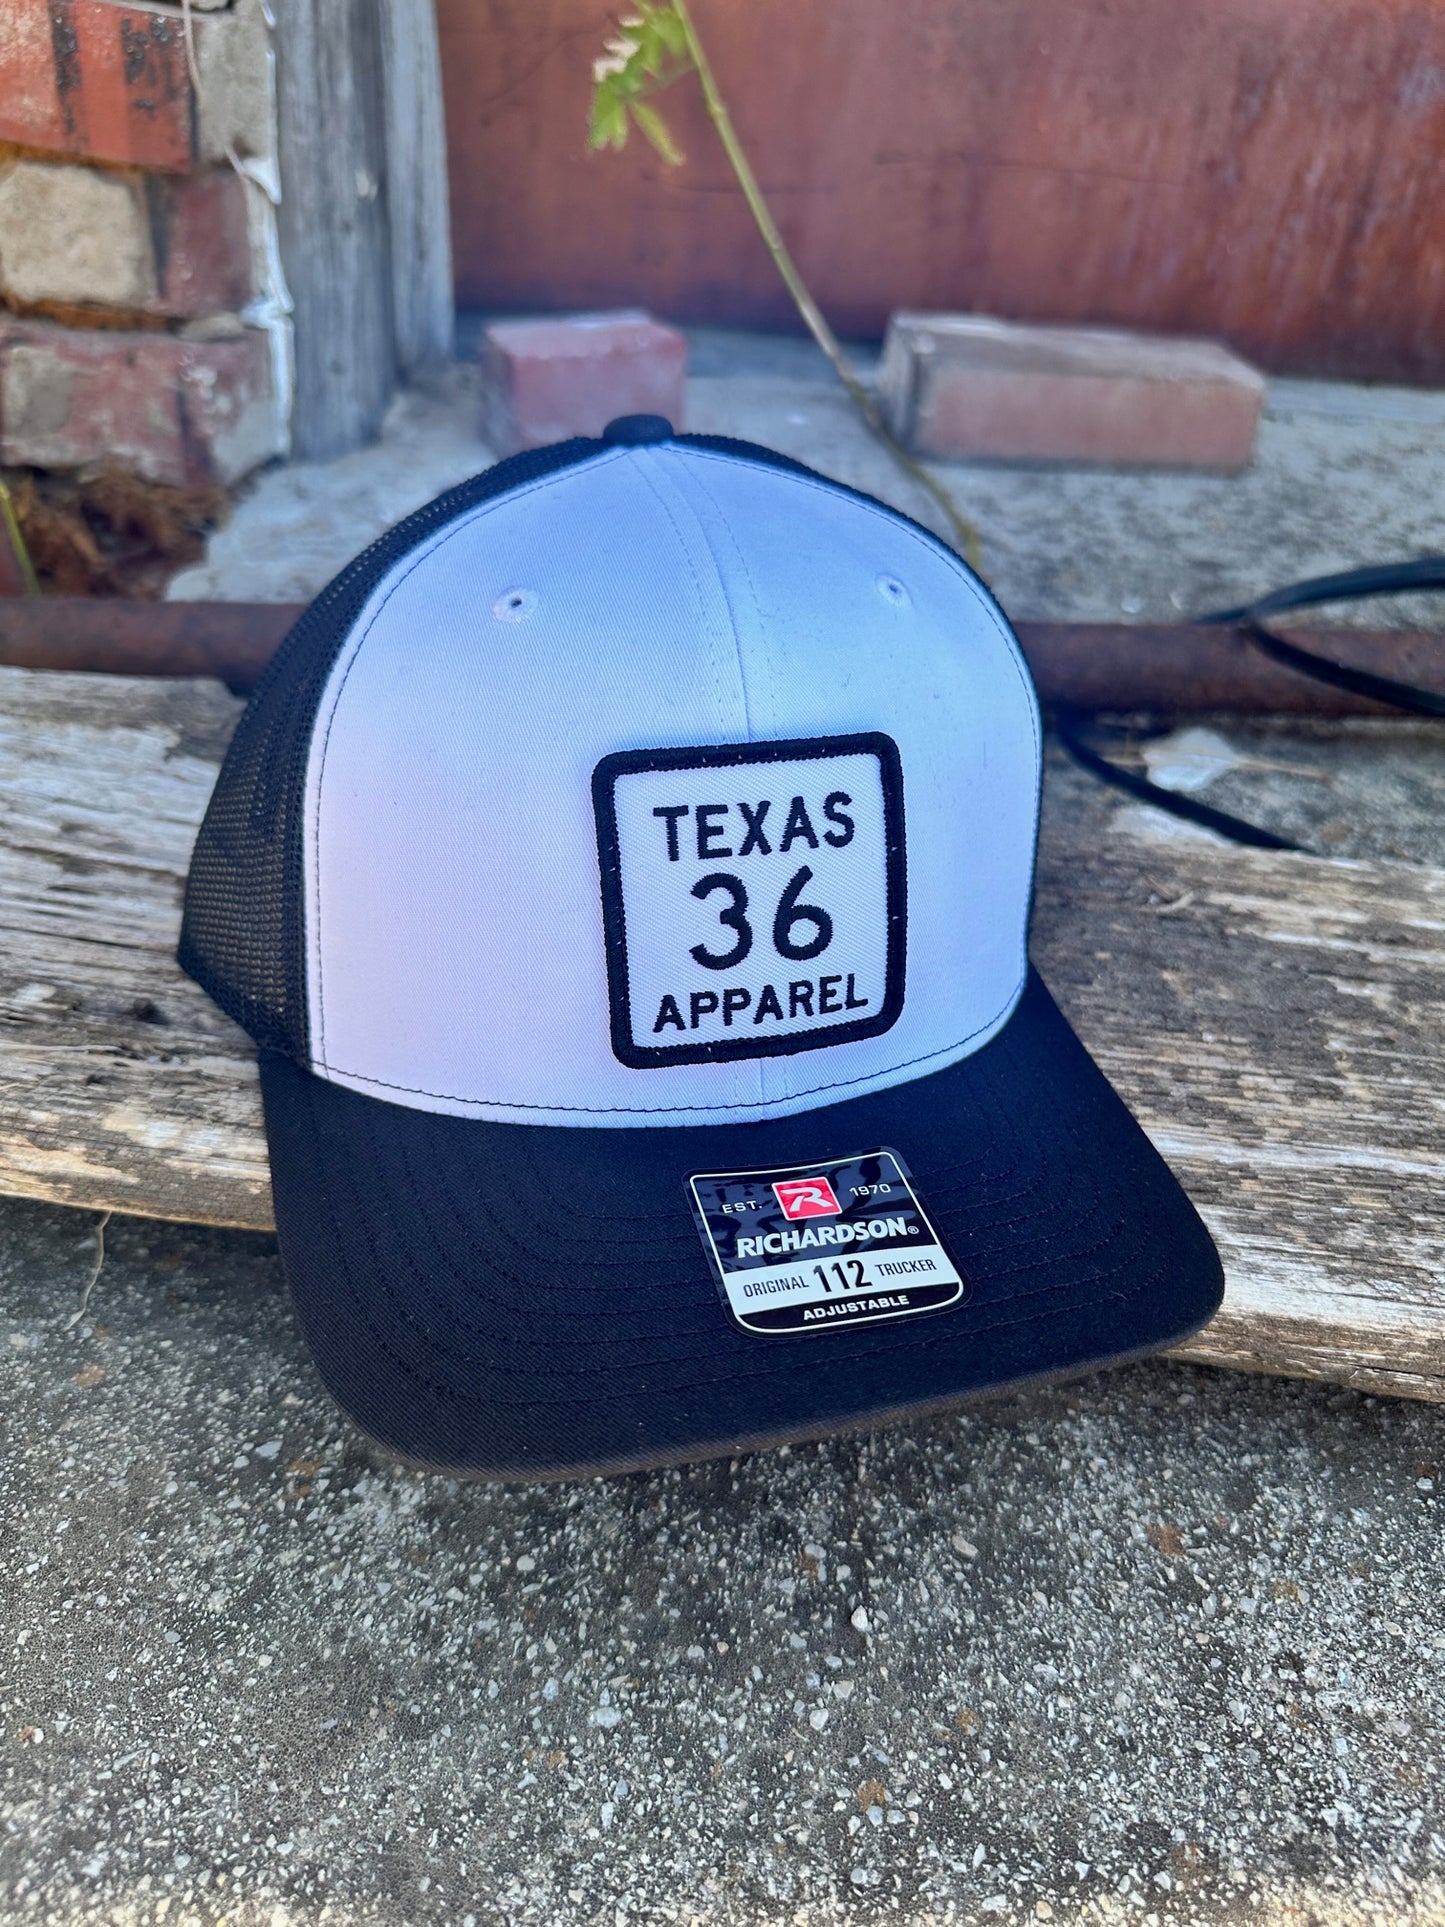 Texas 36 Apparel Caps